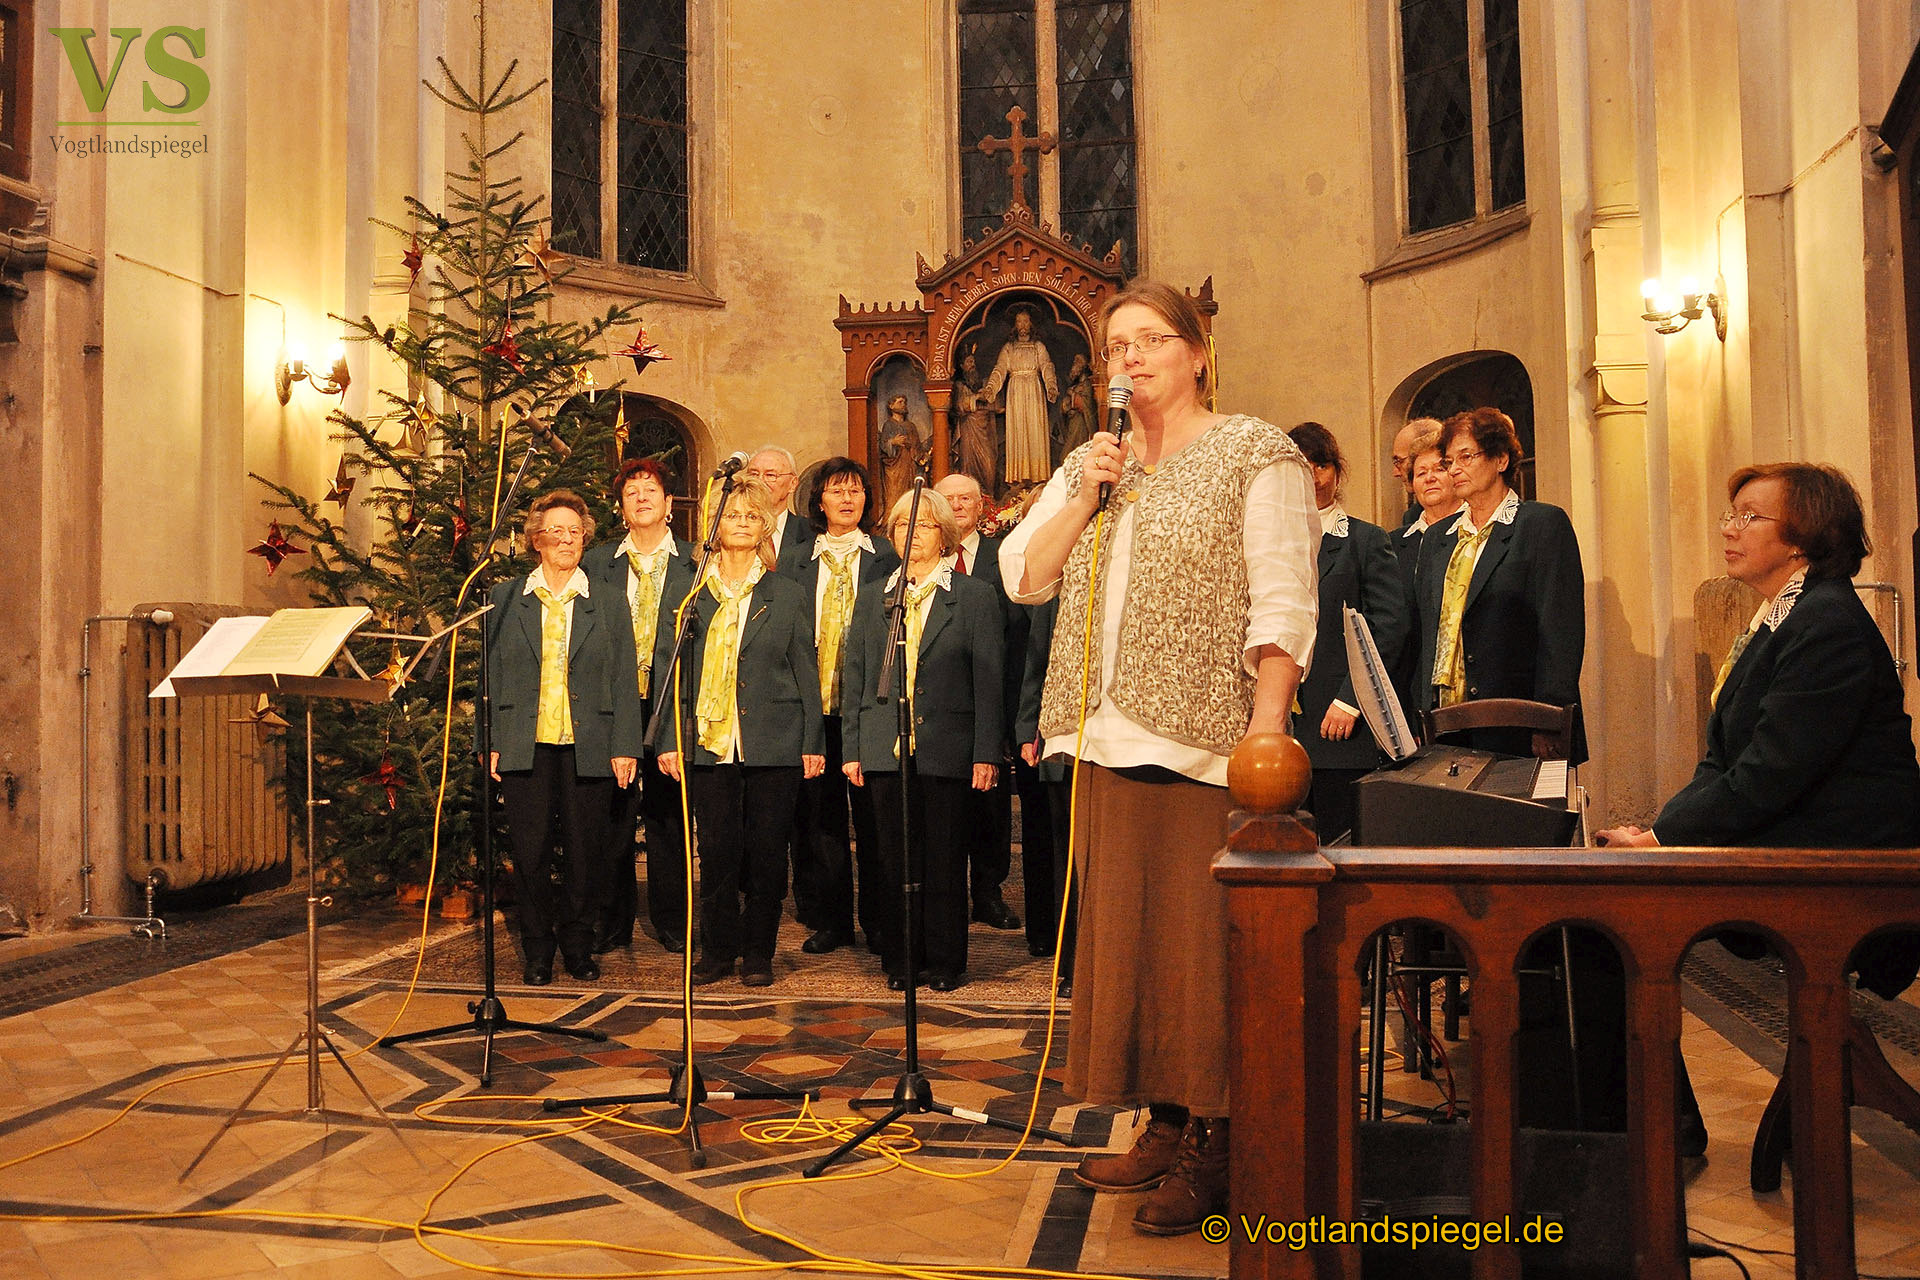 Greizer Volkskunstensemble stimmt in Pohlitzer Kirche musikalisch auf die nahende Weihnacht ein